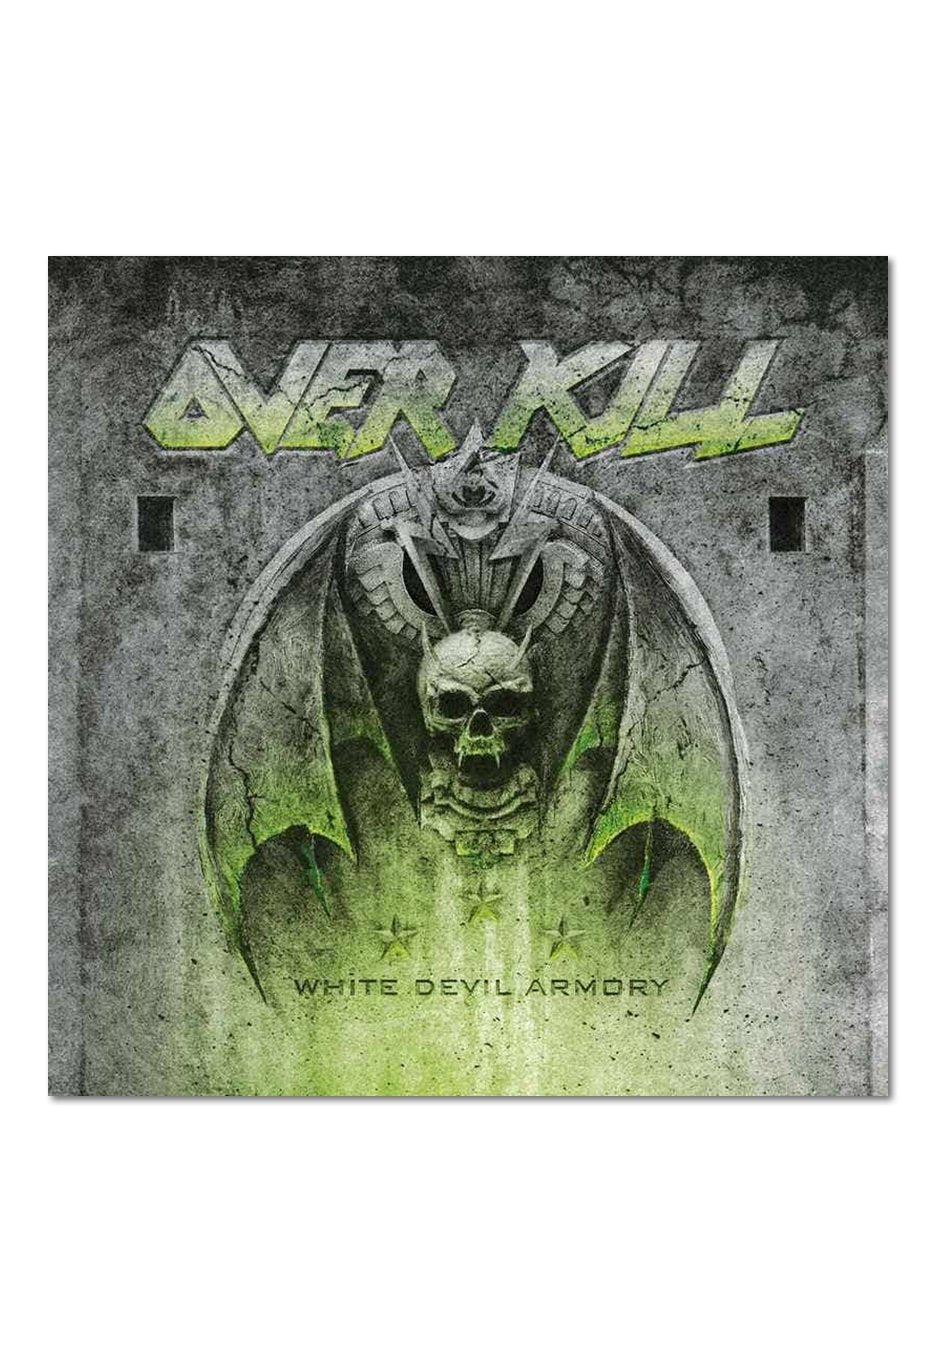 Overkill - White Devil Armory - CD